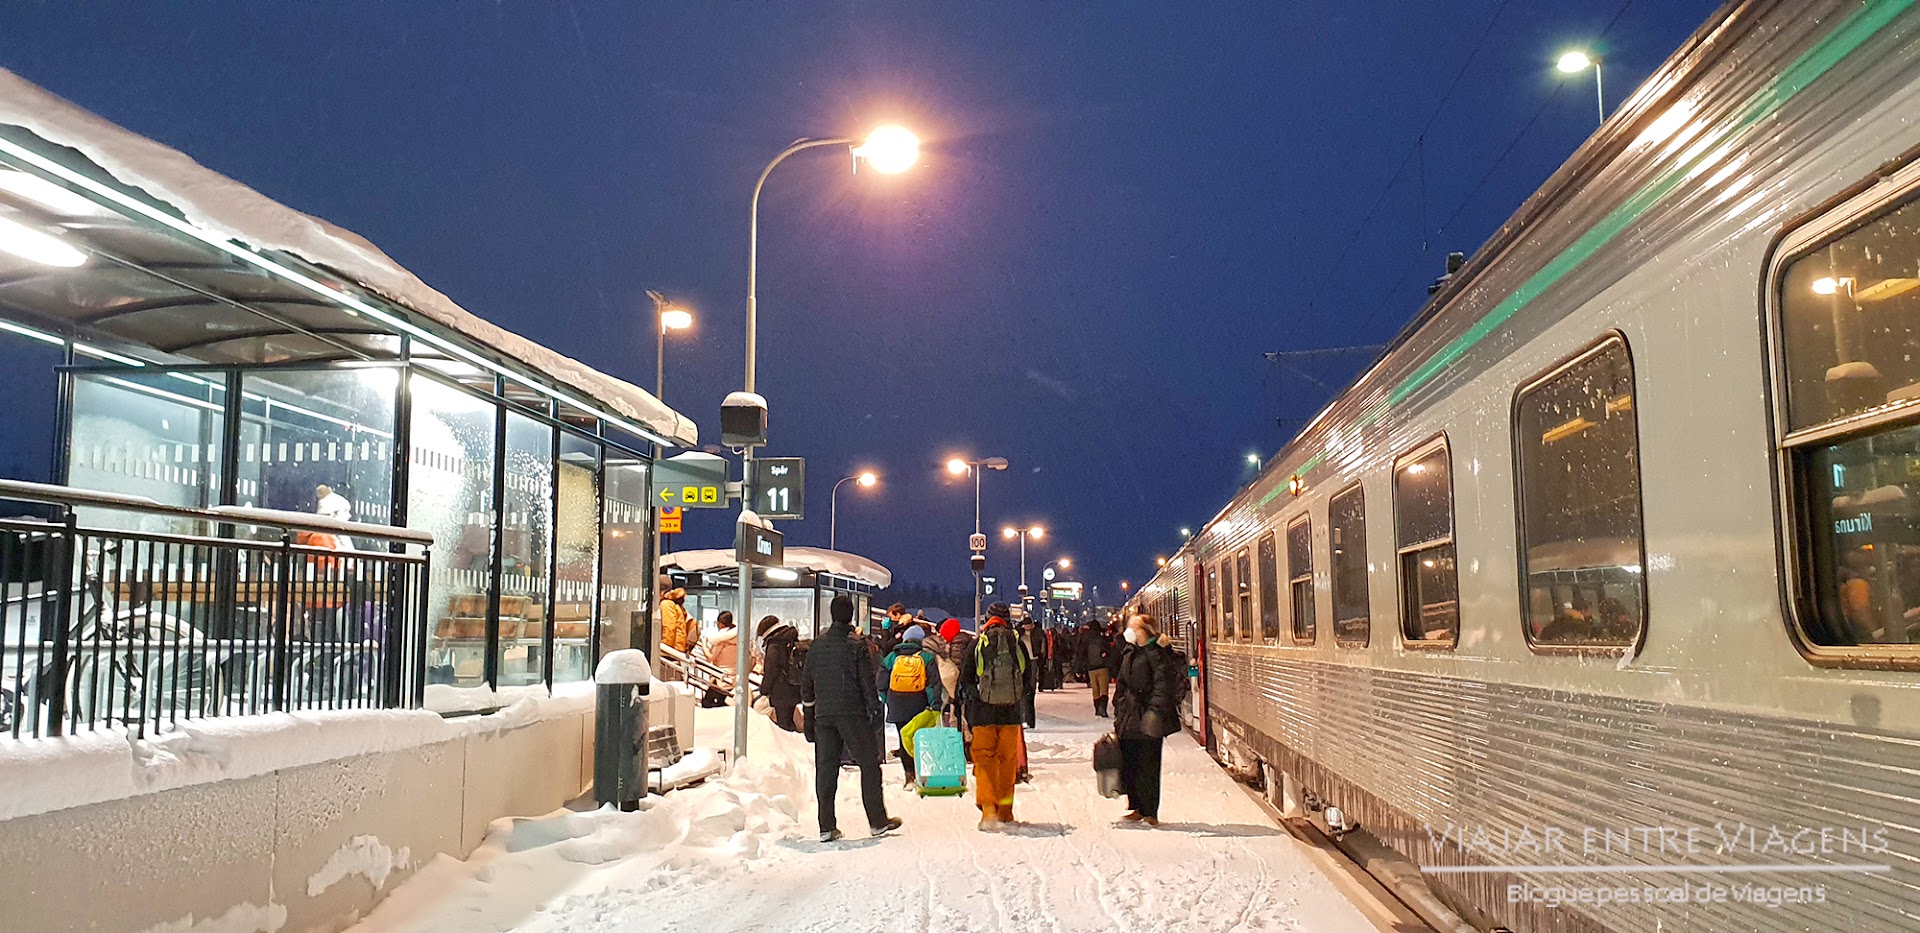 Visitar a LAPÓNIA SUECA | Roteiro e dicas de viagem para visitar Kiruna e Abisko (com auroras boreais e hotel de gelo)